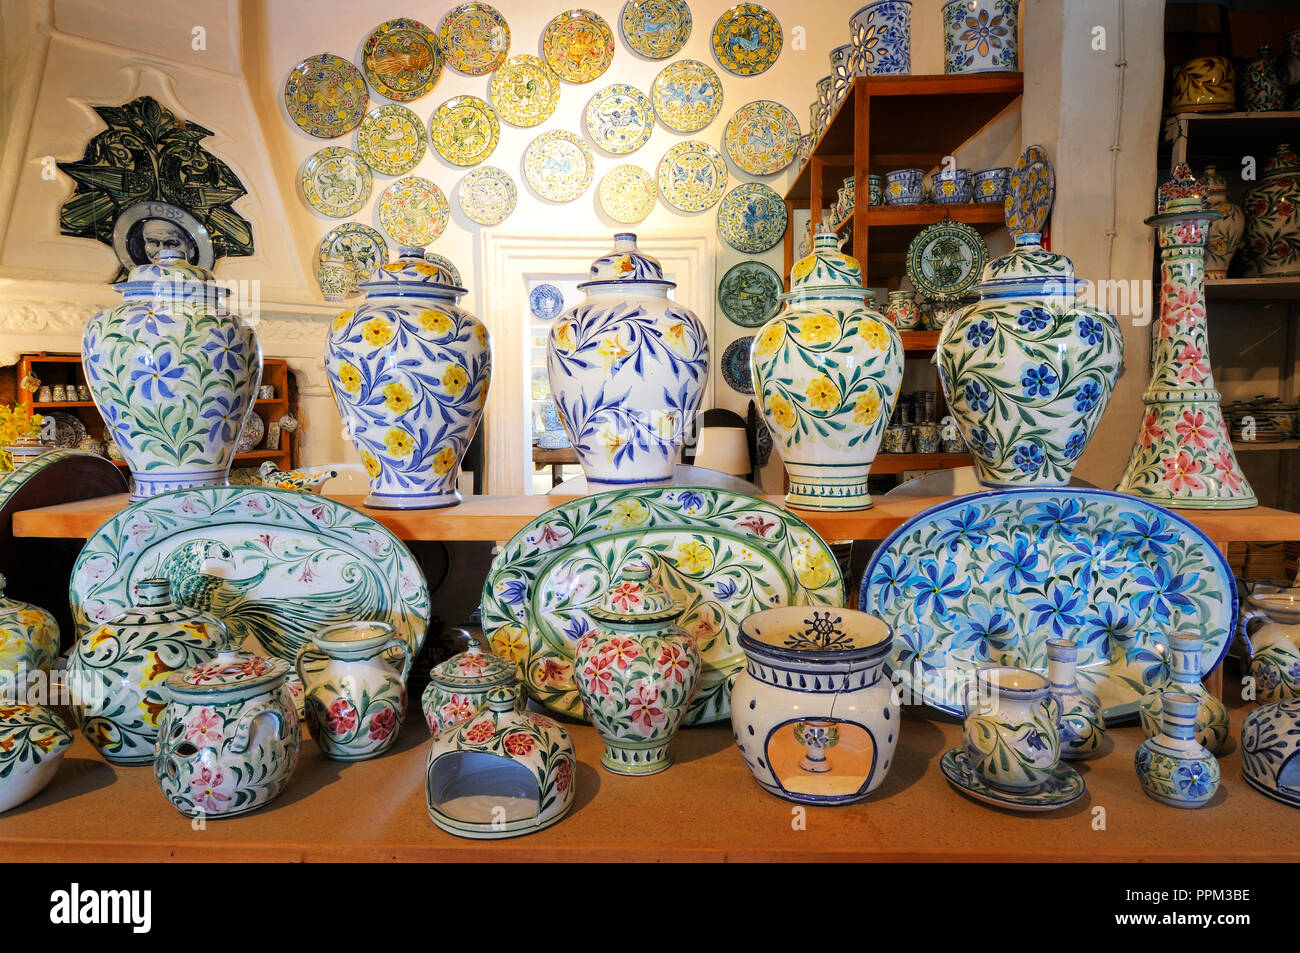 L'artisanat de l'Algarve Algarve (poterie). Porches, Portugal Banque D'Images